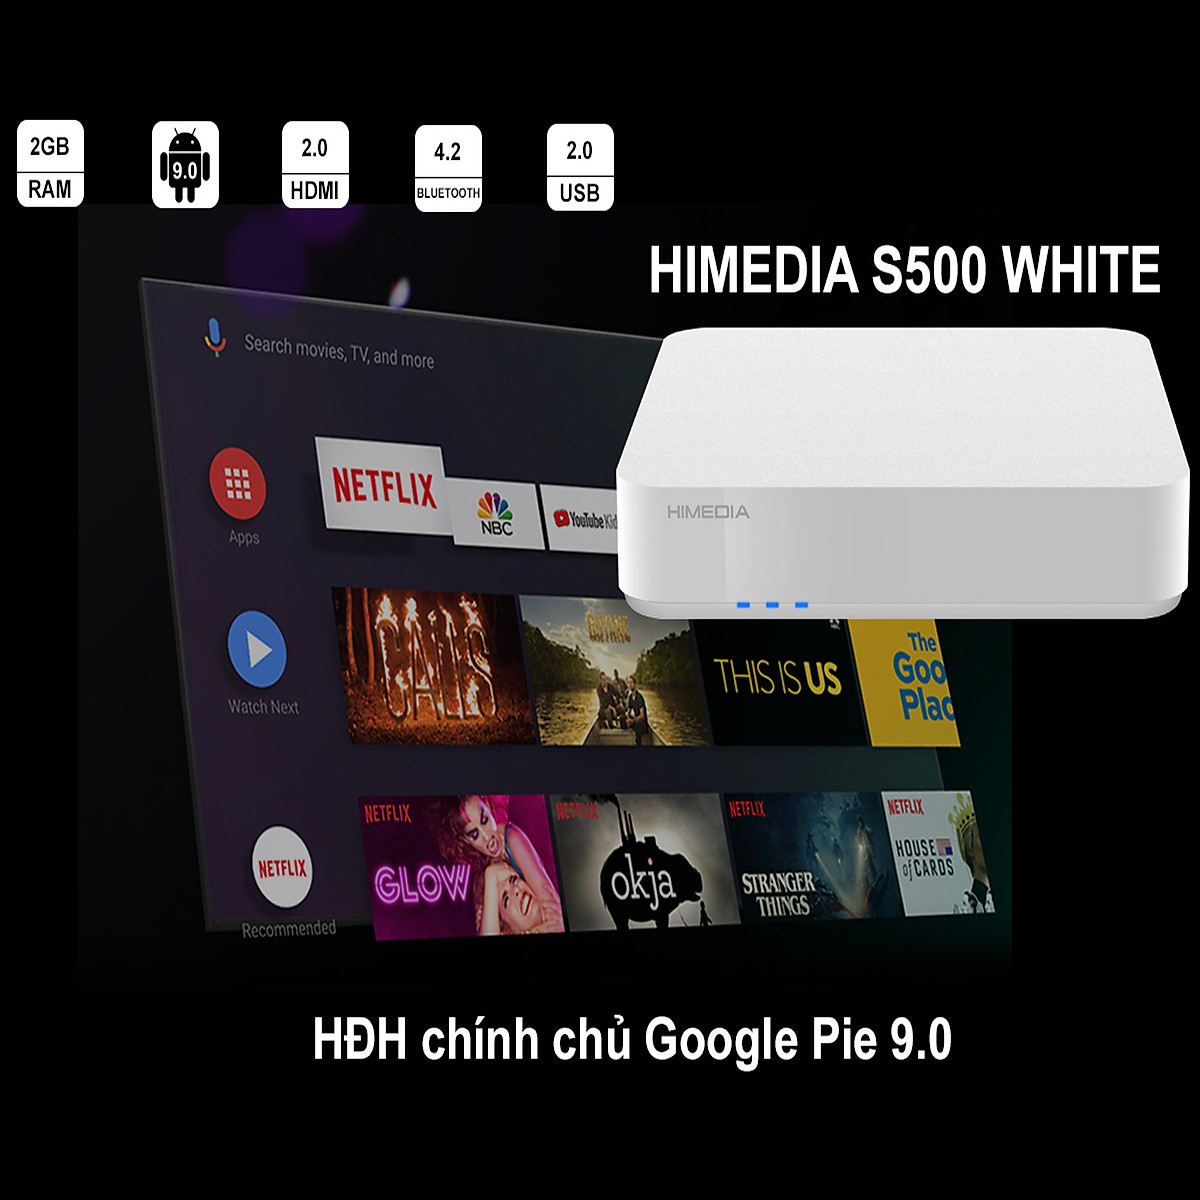 Android Tv Box HIMEDIA S500 - Android Chính Chủ Google 9.0, Ram 2G, Có Cổng Quang - Hàng Chính Hãng